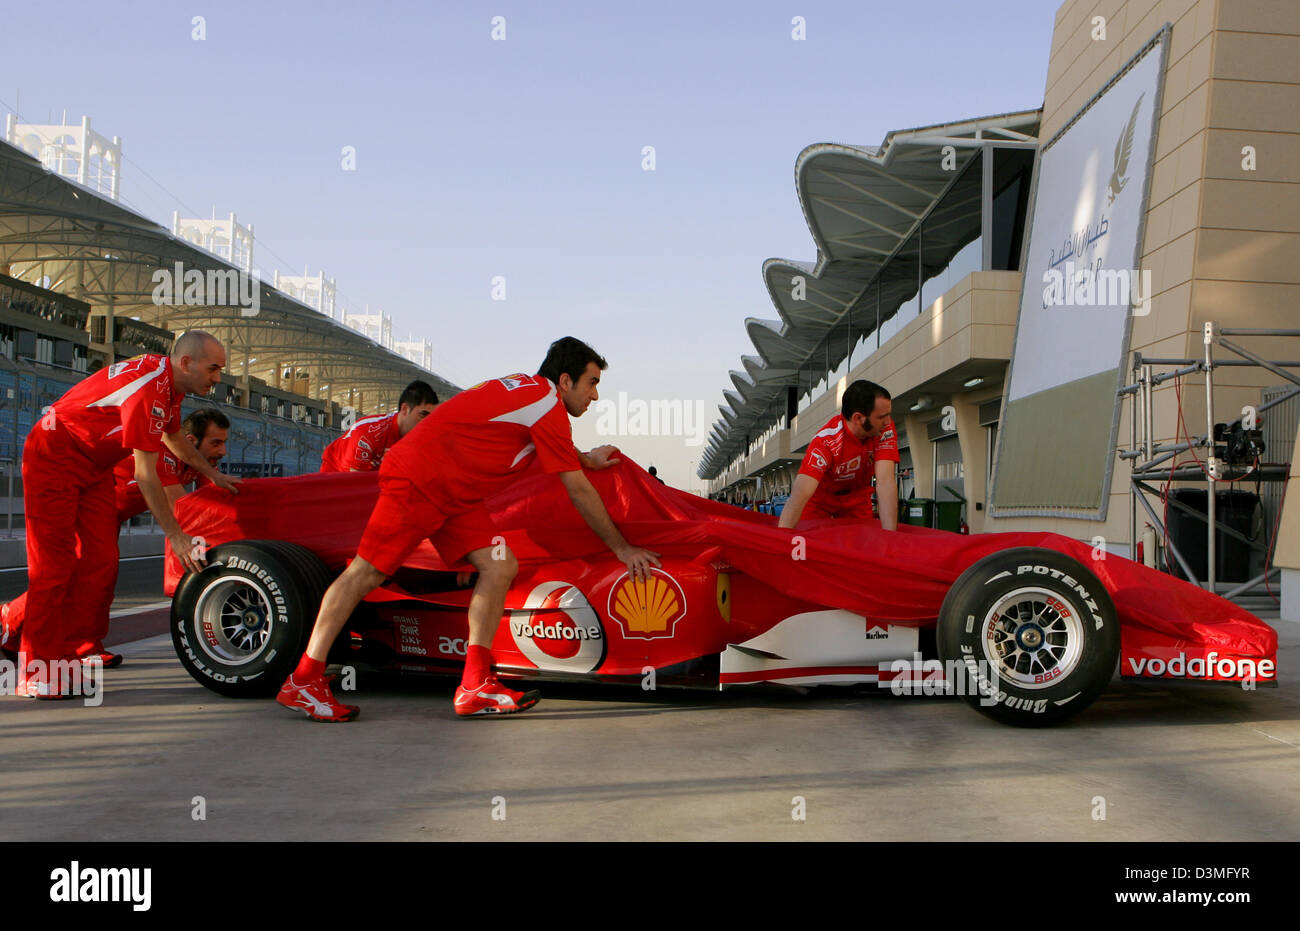 Mécanique de Ferrari pousser leur voiture dans la voie des stands à la piste de course de Formule 1 près de Manama, Bahreïn, le mercredi 08 mars 2006. La première course du championnat du monde de F1 2006, le Grand Prix de Bahreïn, aura lieu ici le dimanche 12 mars 2006. Photo : Carmen Jaspersen Banque D'Images